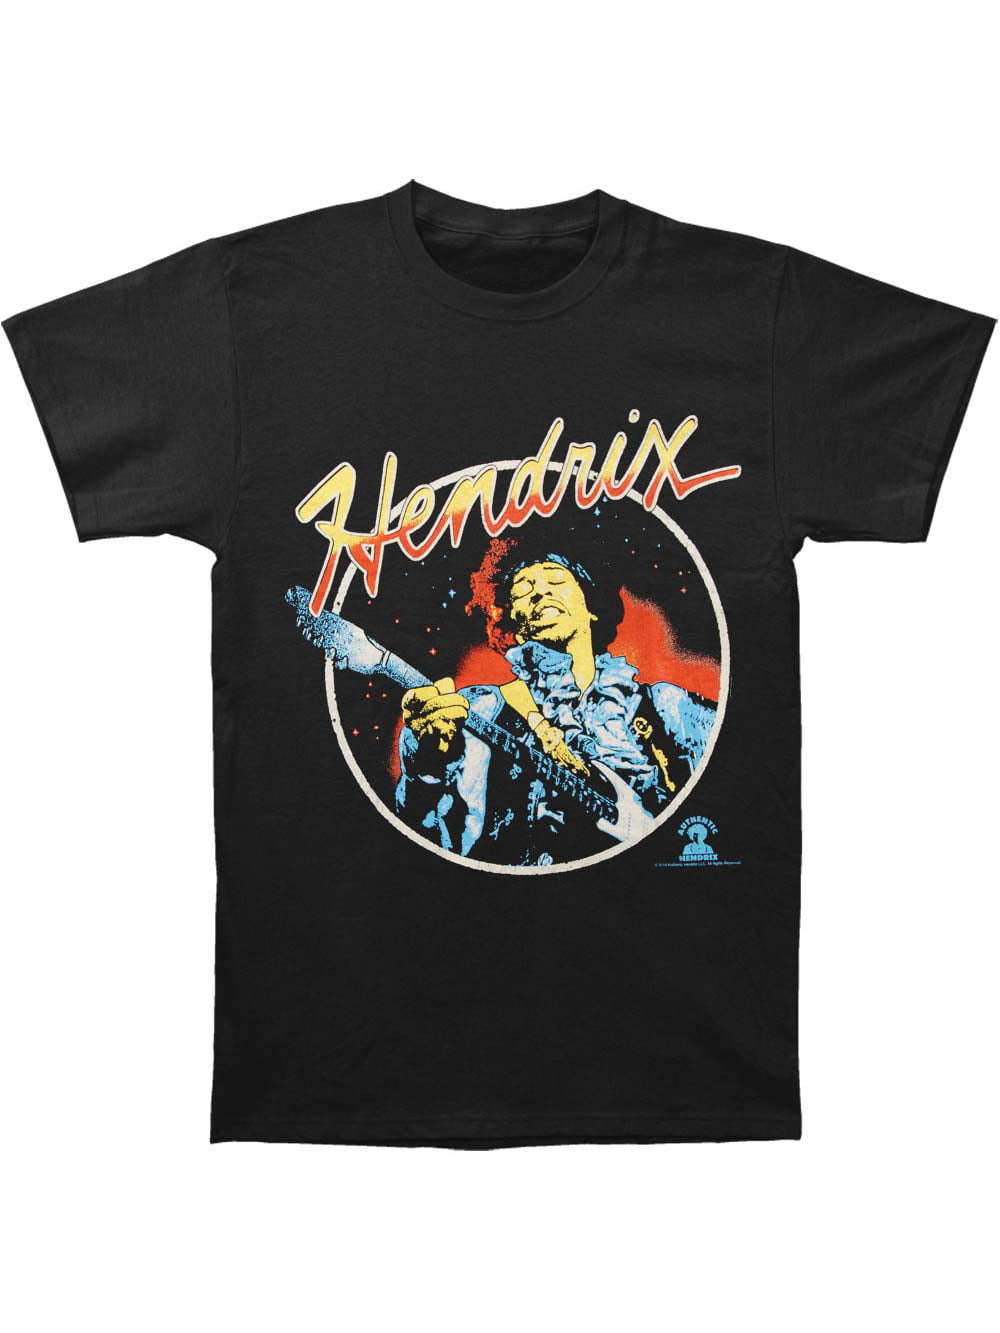 Jimi Hendrix Men/'s Script Circle Short Sleeve T-shirt Large Tshirt Black